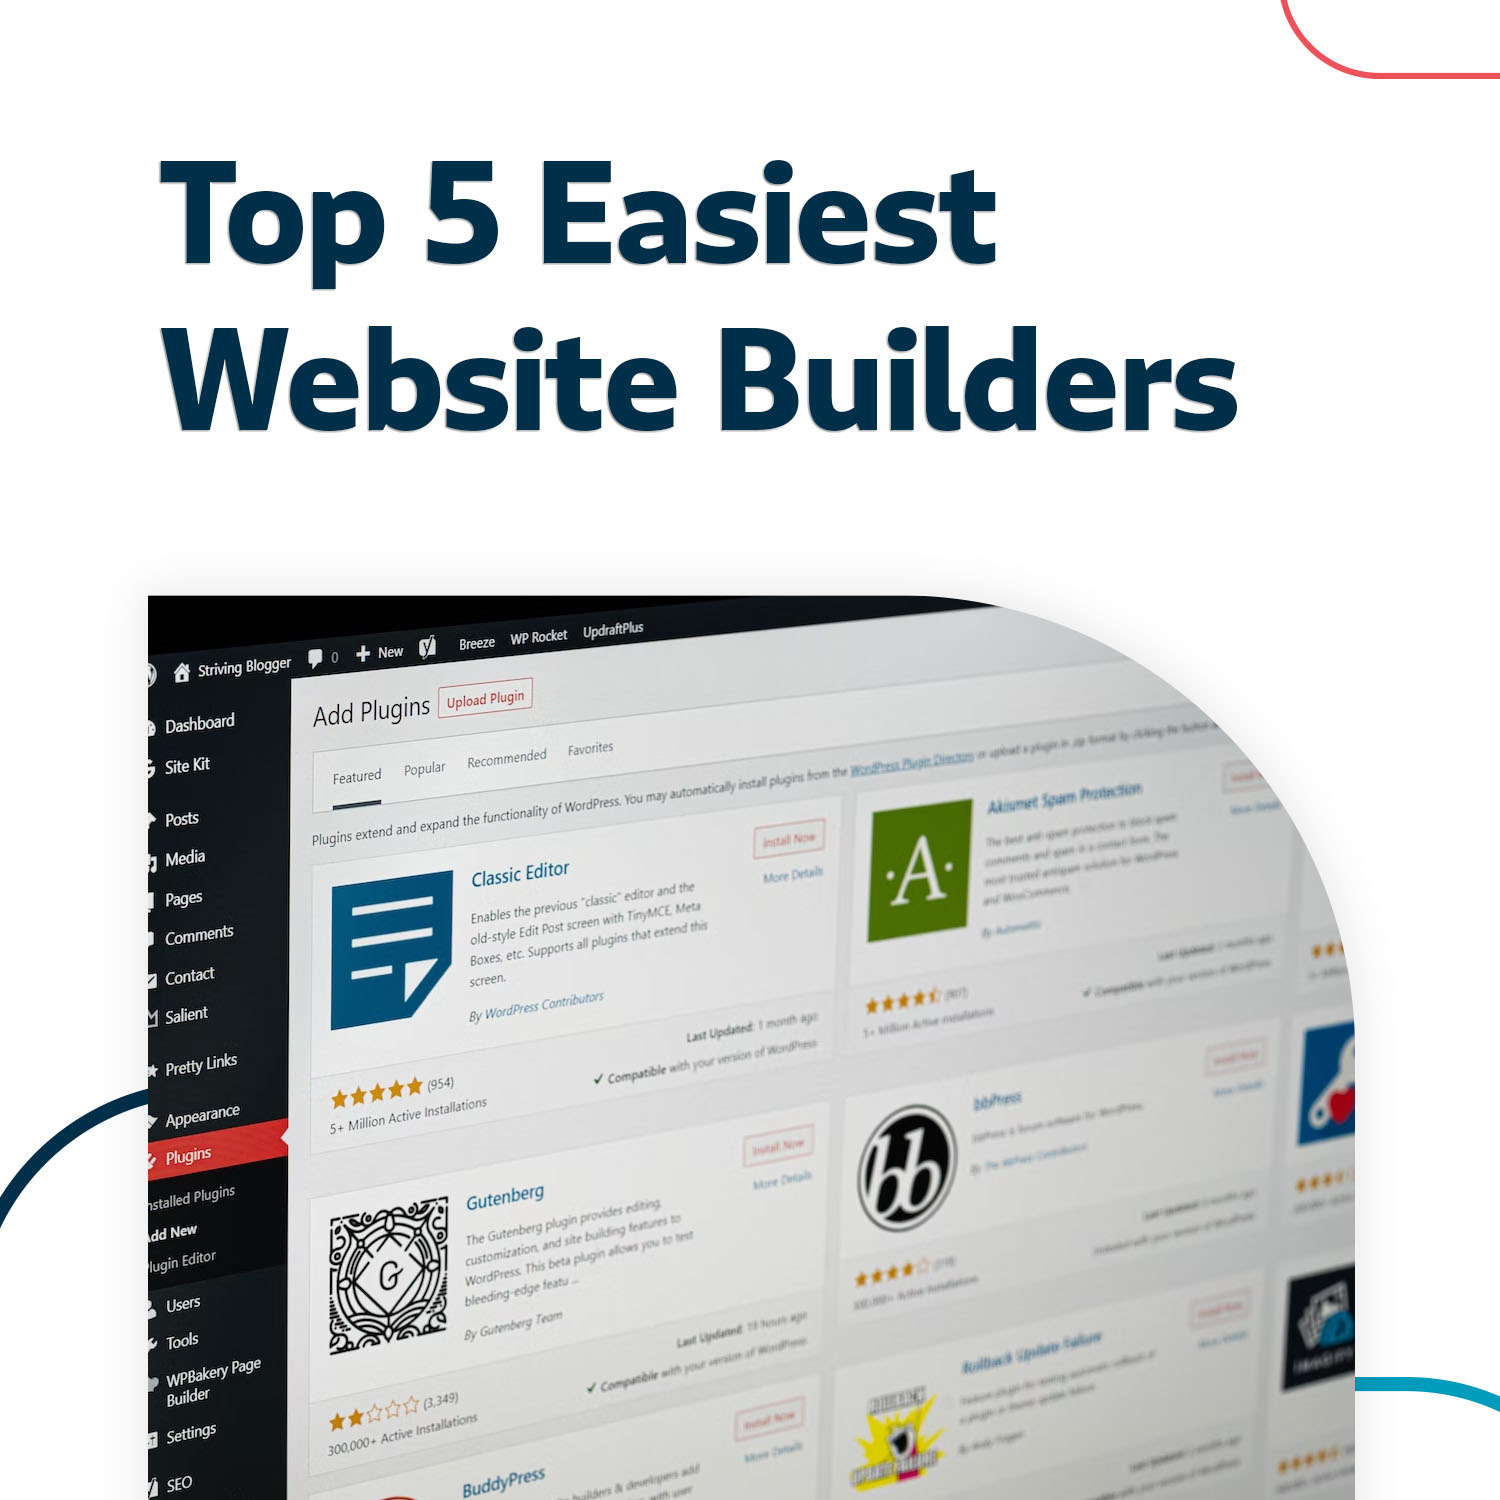 Easiest Website Builders